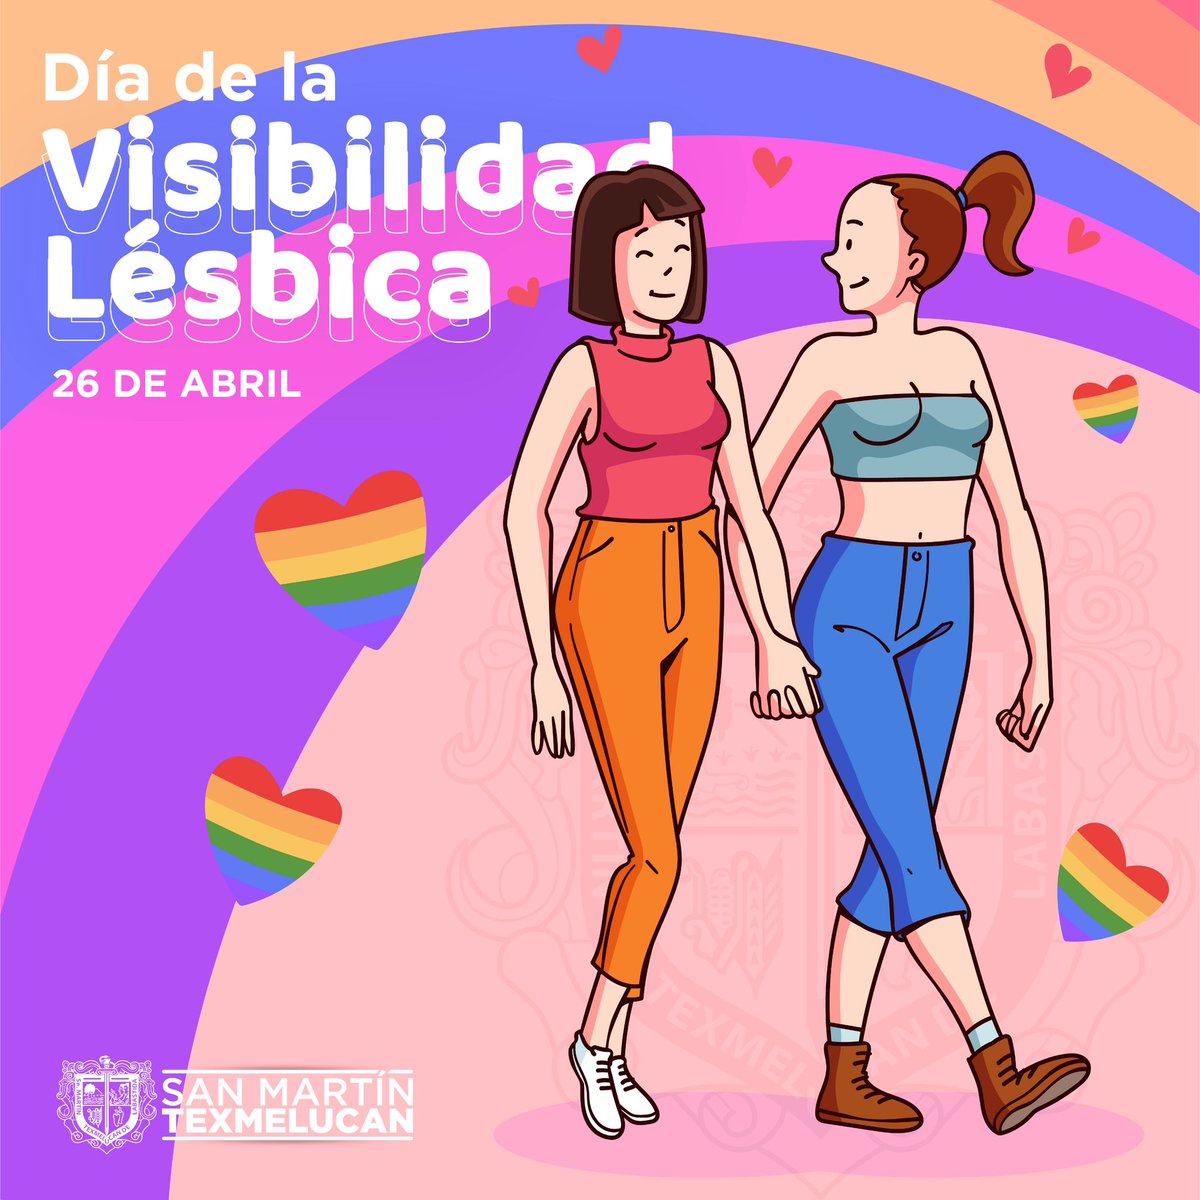 El Día de la Visibilidad Lésbica es una oportunidad para celebrar el amor y la diversidad dentro de la comunidad LGBTQ+. Destacamos la fortaleza y la resiliencia de las mujeres que aman a otras mujeres, para crear un mundo donde todas puedan vivir sin miedo ni discriminación.